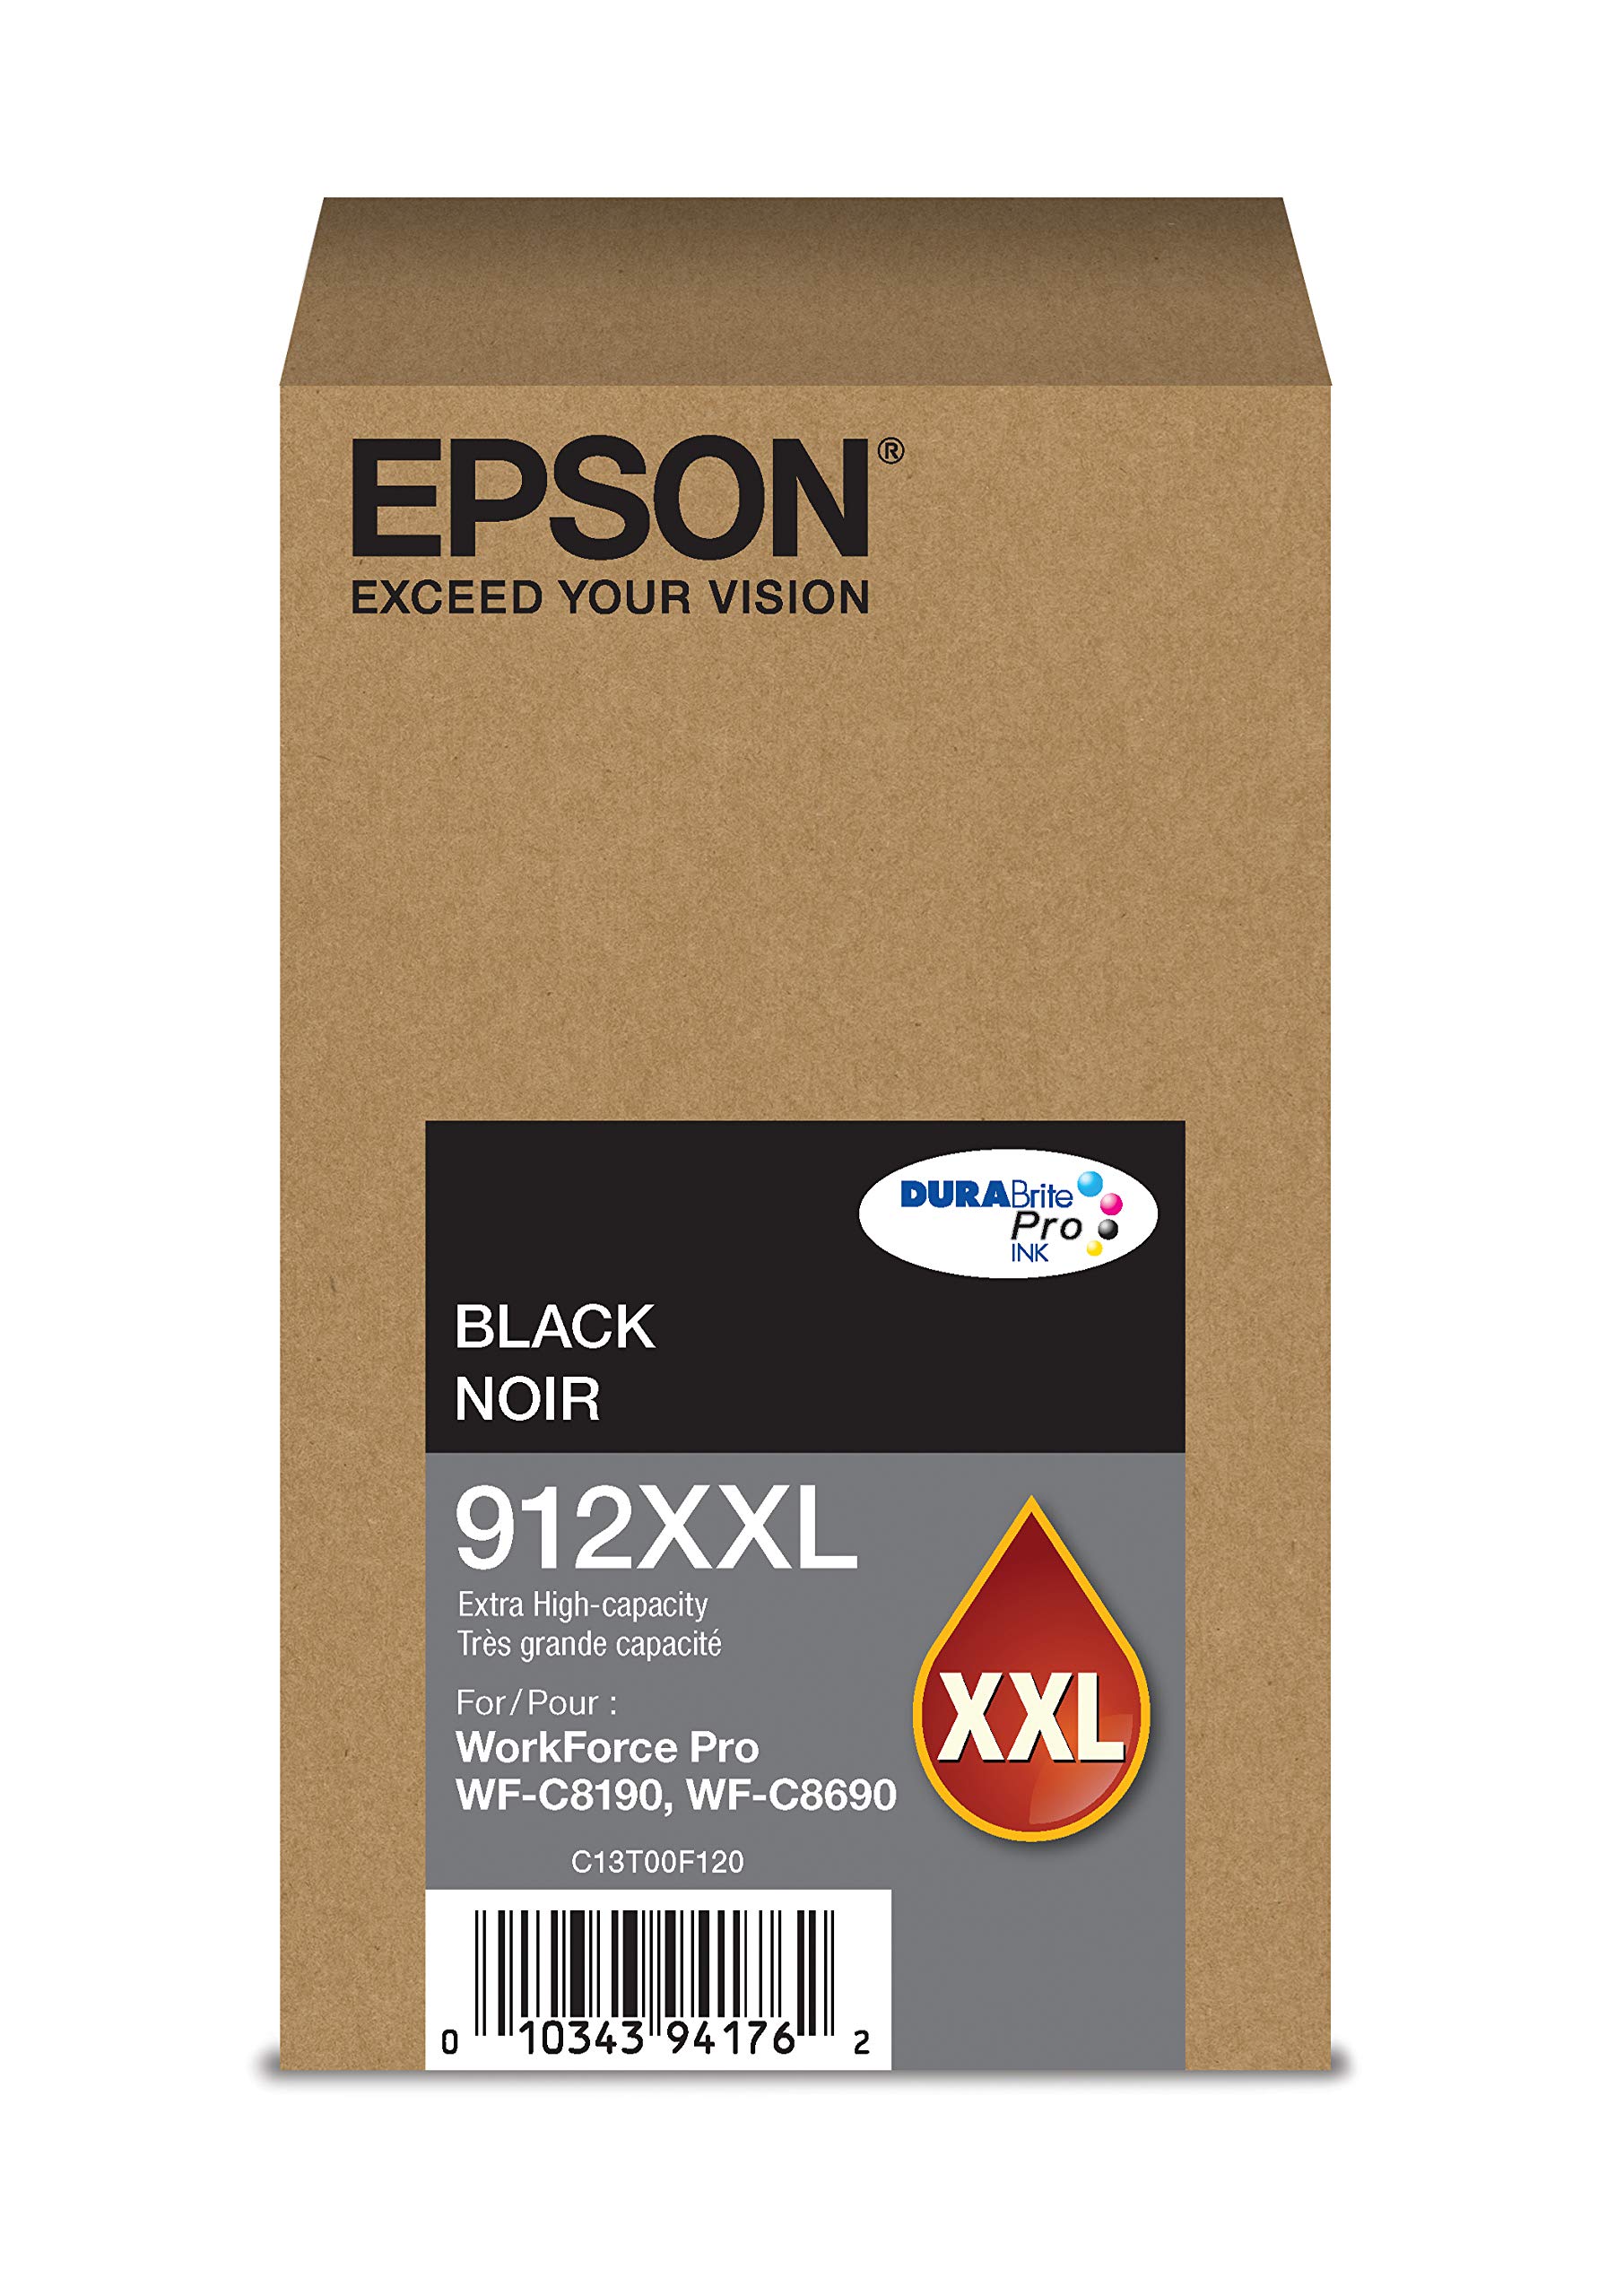 Epson DURABrite Pro T912XXL120 -墨水 -墨盒 - 超大容量黑色...